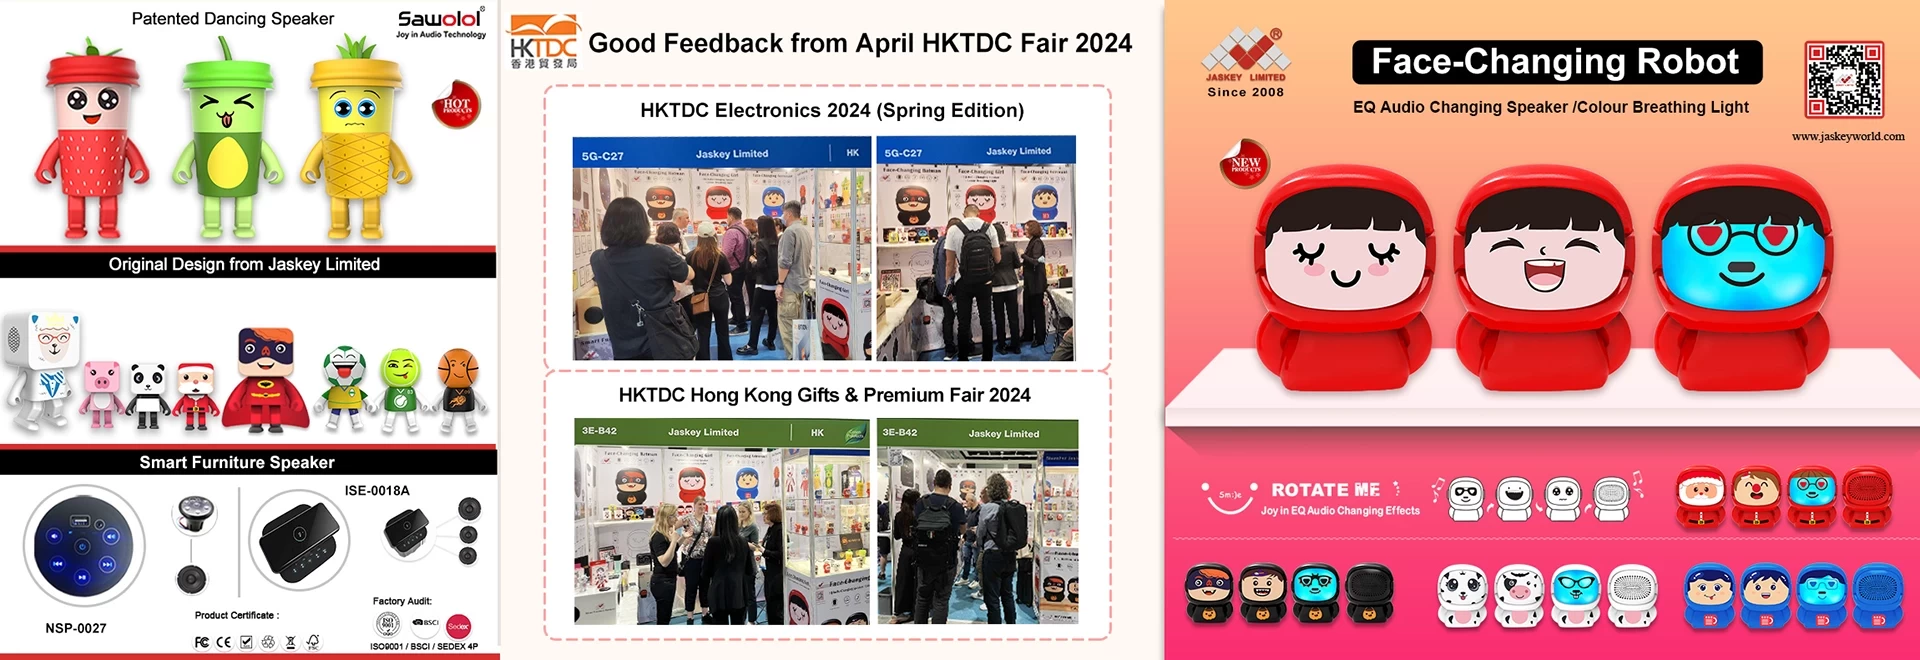 Buenos comentarios de HKTDC Electronics 2024 (edición de primavera) y Gifts & Premium Fair